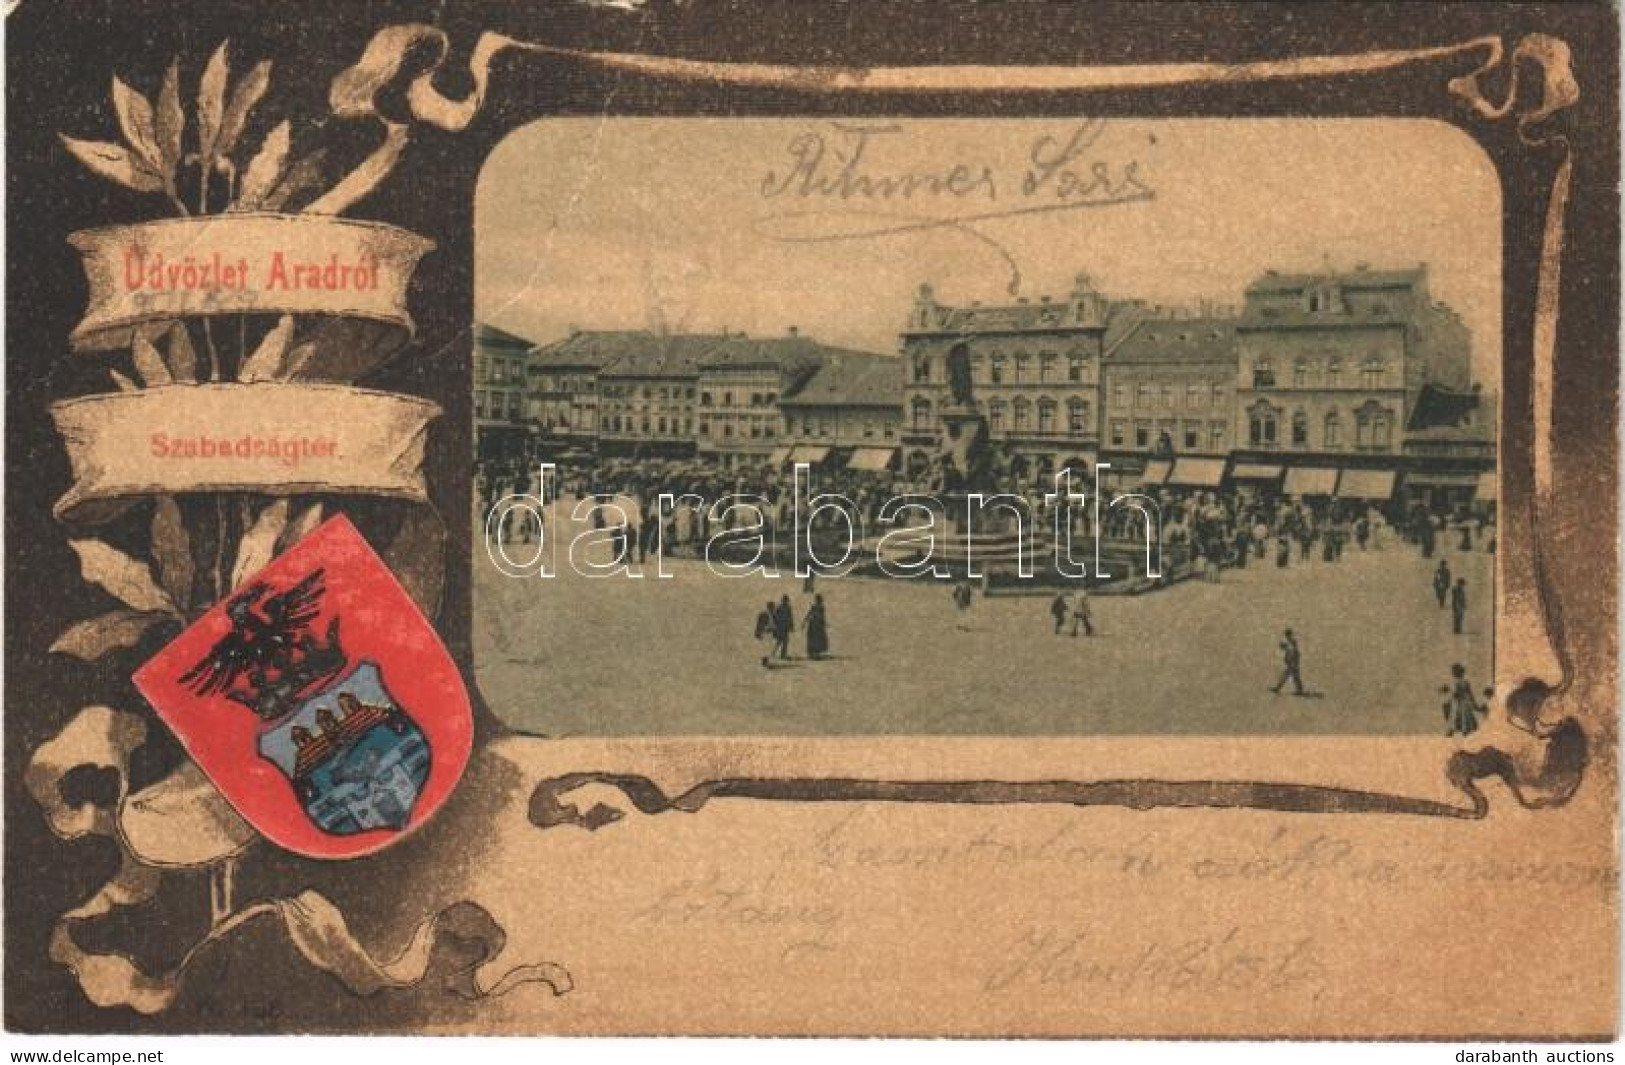 T3/T4 1902 Arad, Szabadság Tér, Piac, üzletek. Szecessziós Litho Keret Címerrel / Market Square, Shops. Art Nouveau Lith - Unclassified